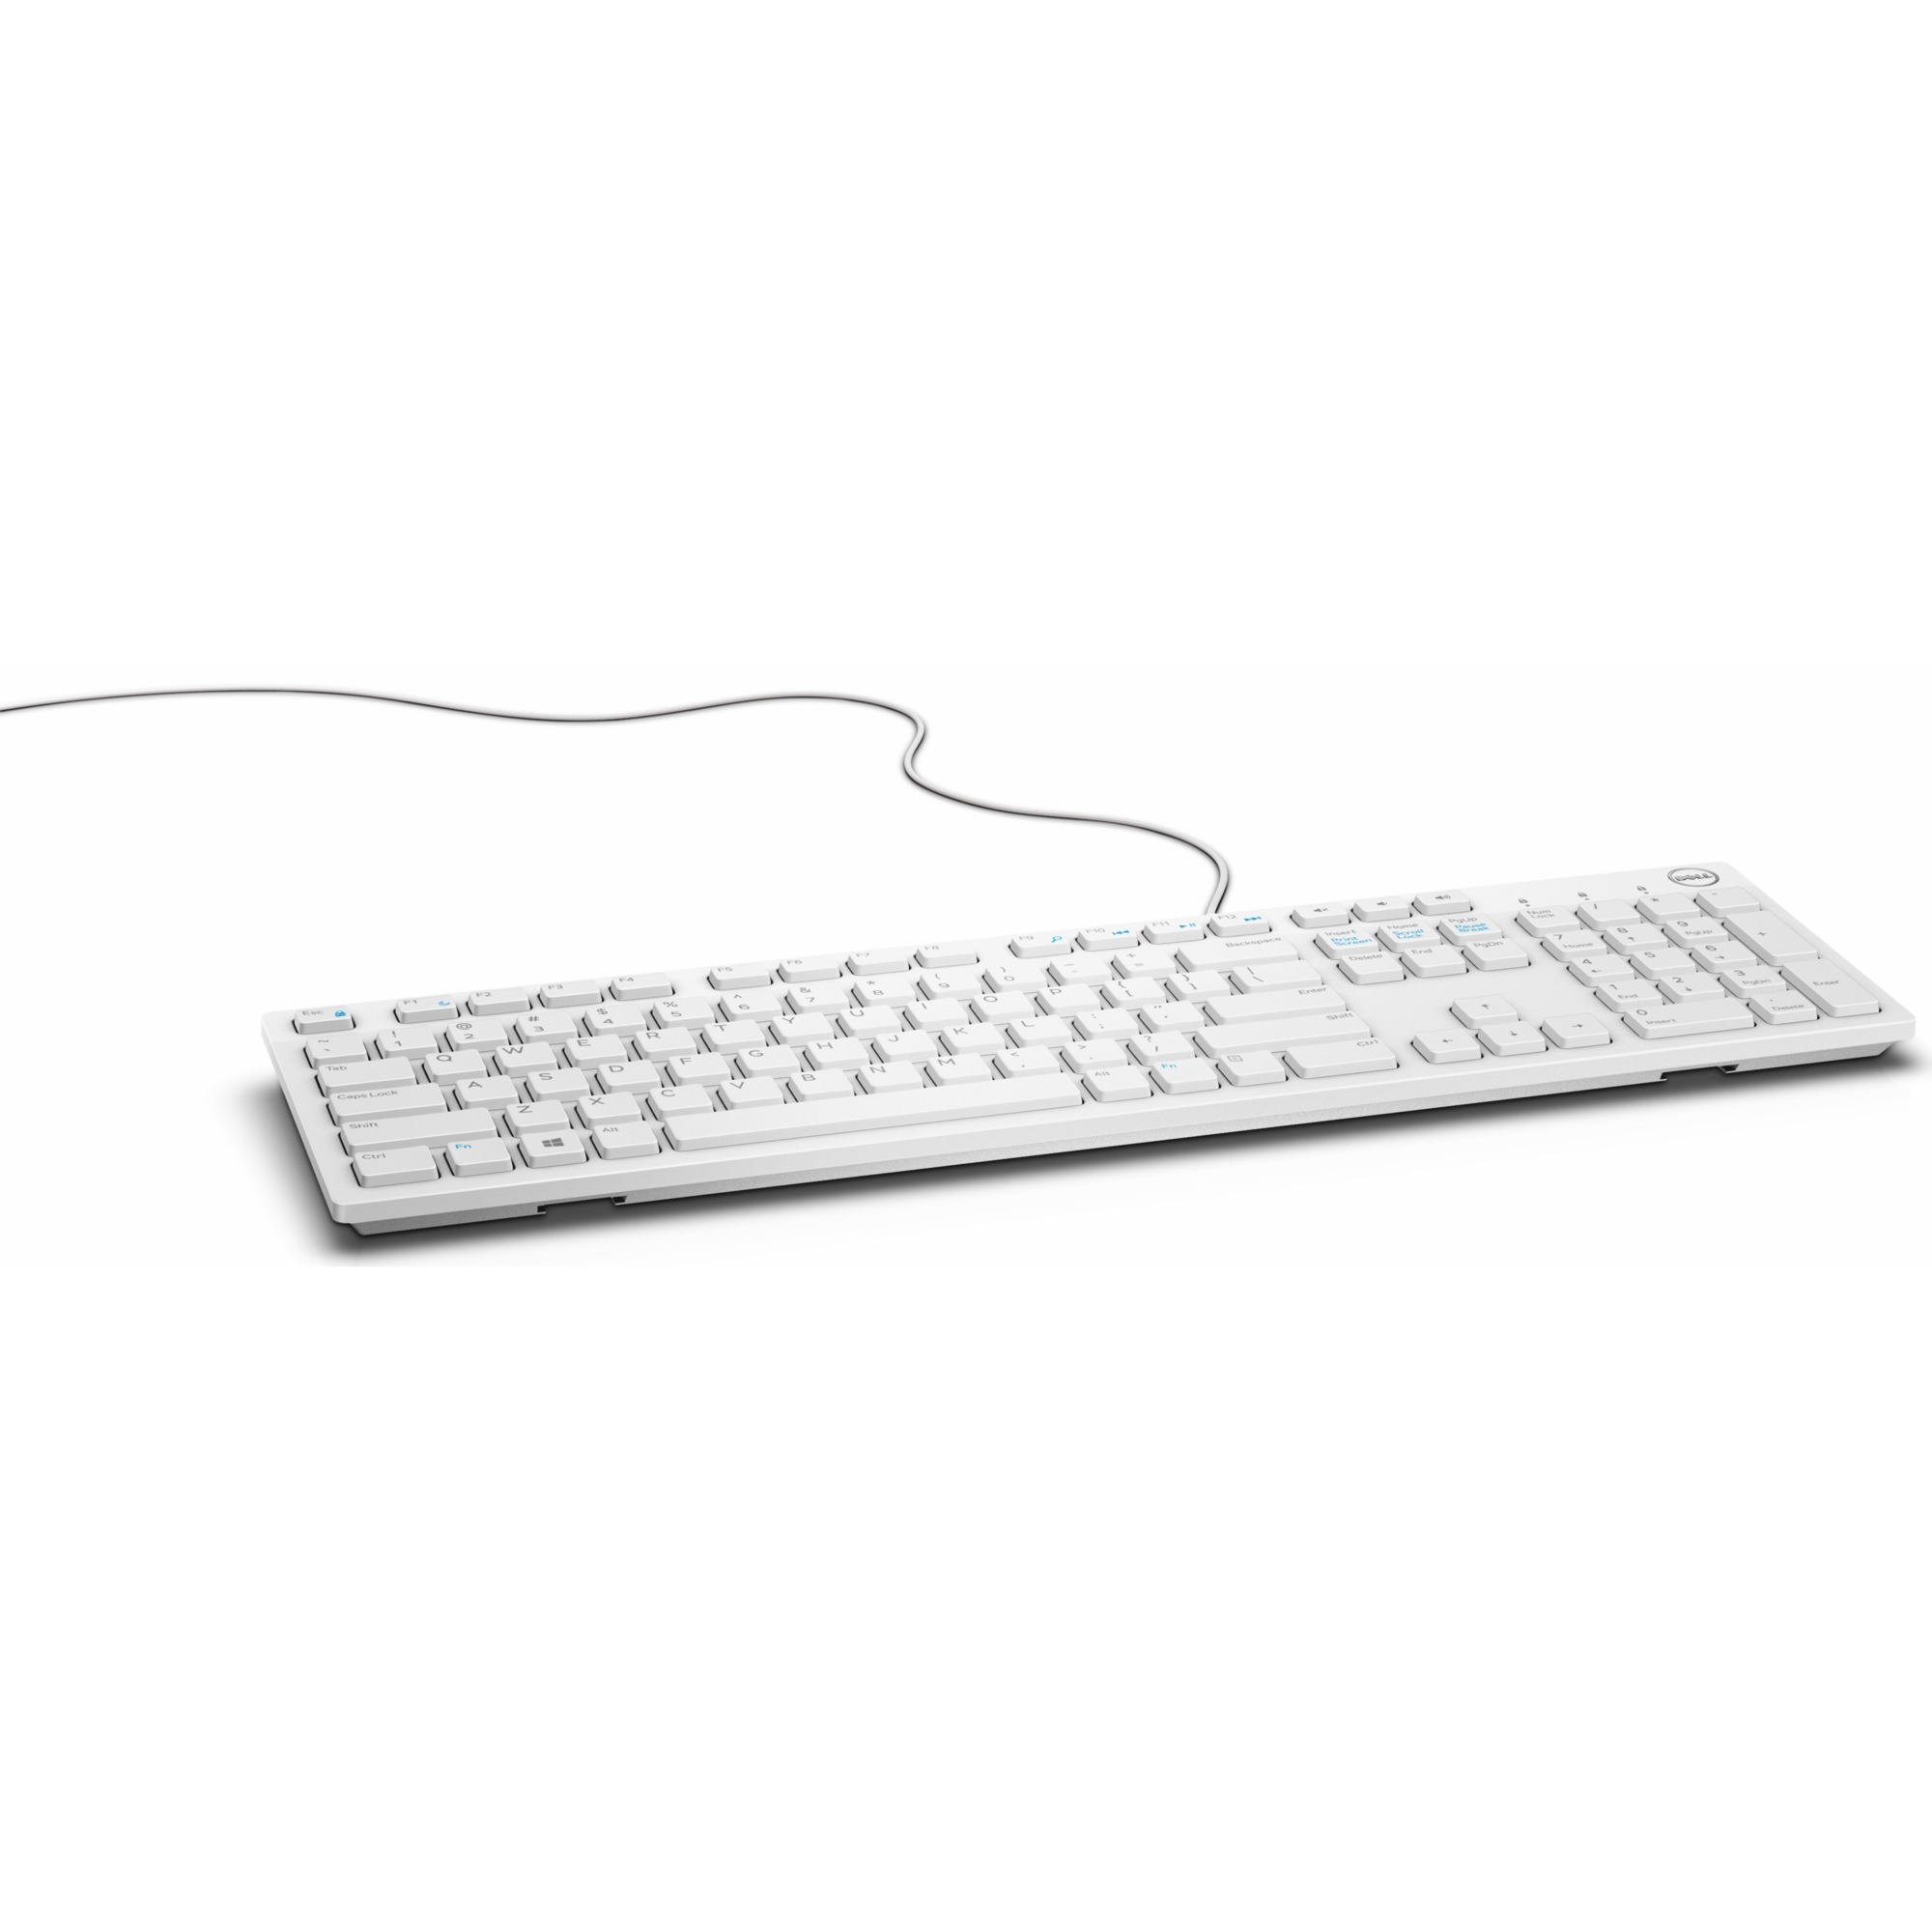 Image of Alternate - Multimedia-Tastatur KB216 online einkaufen bei Alternate